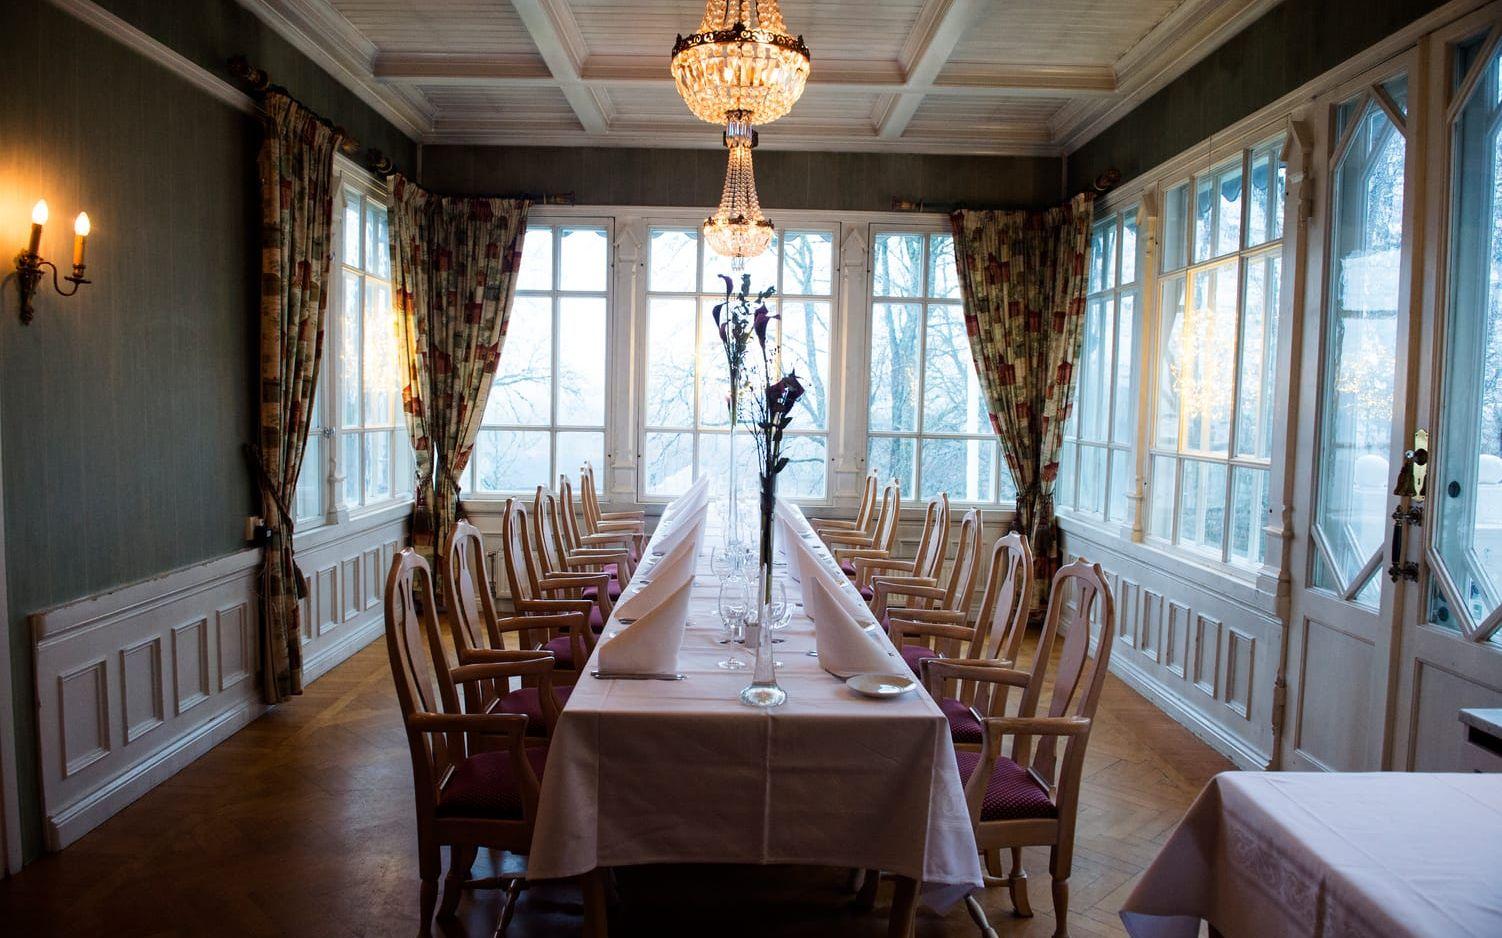 52 bröllop hade slottet under 2016. Bild: Lasse Edwartz